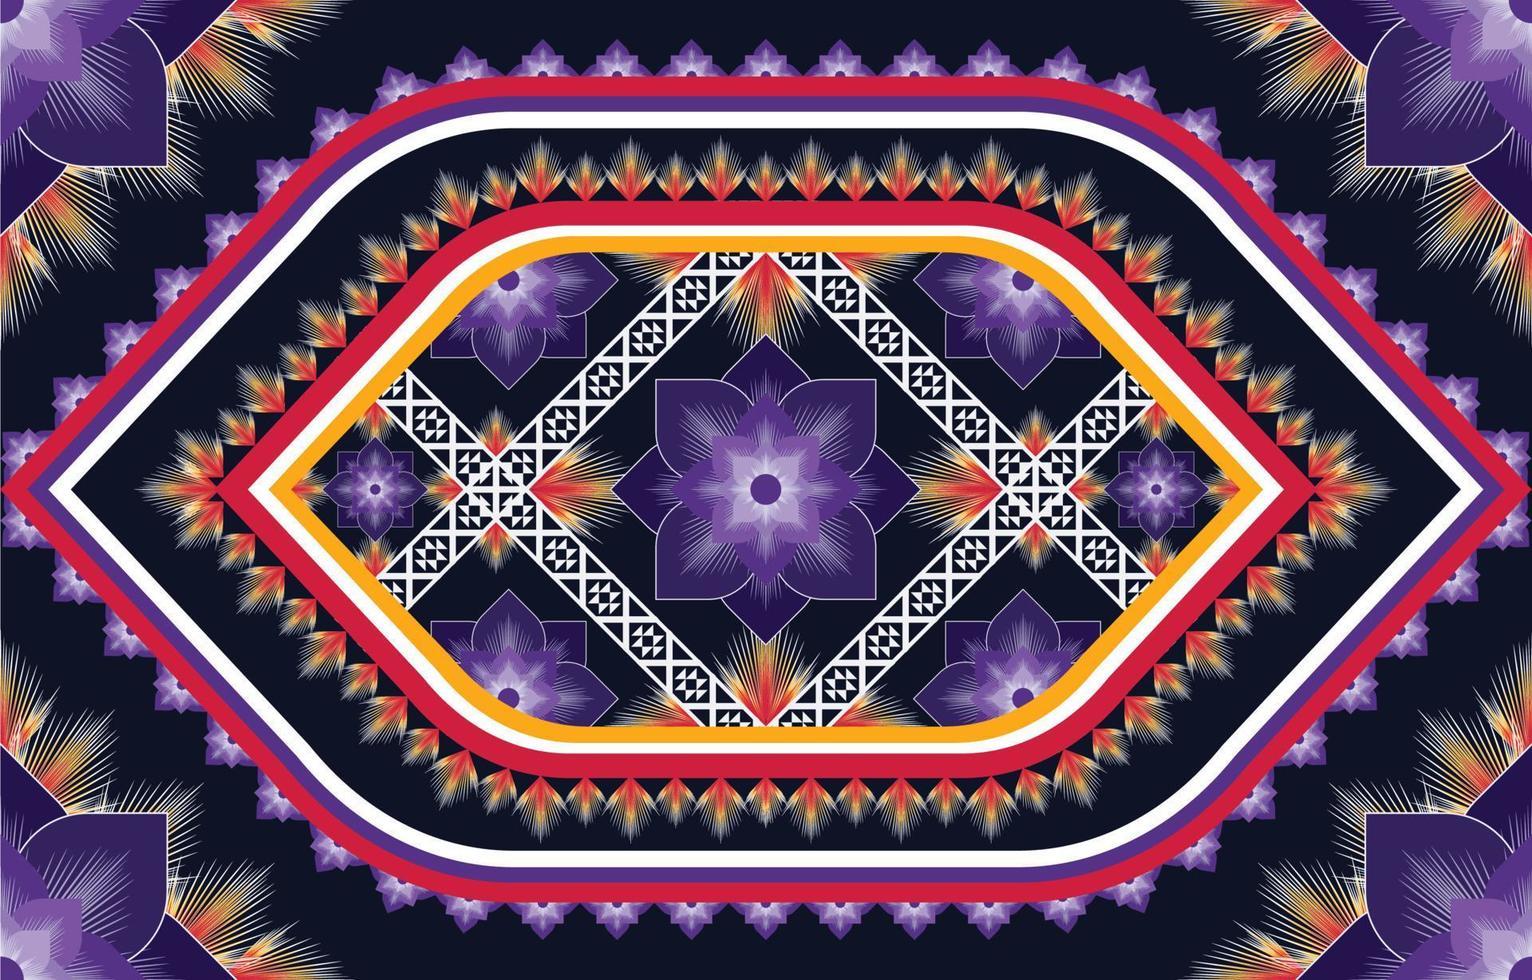 motif ethnique tissu texture géométrique vecteur aztèque oriental illustration rétro carreaux de céramique